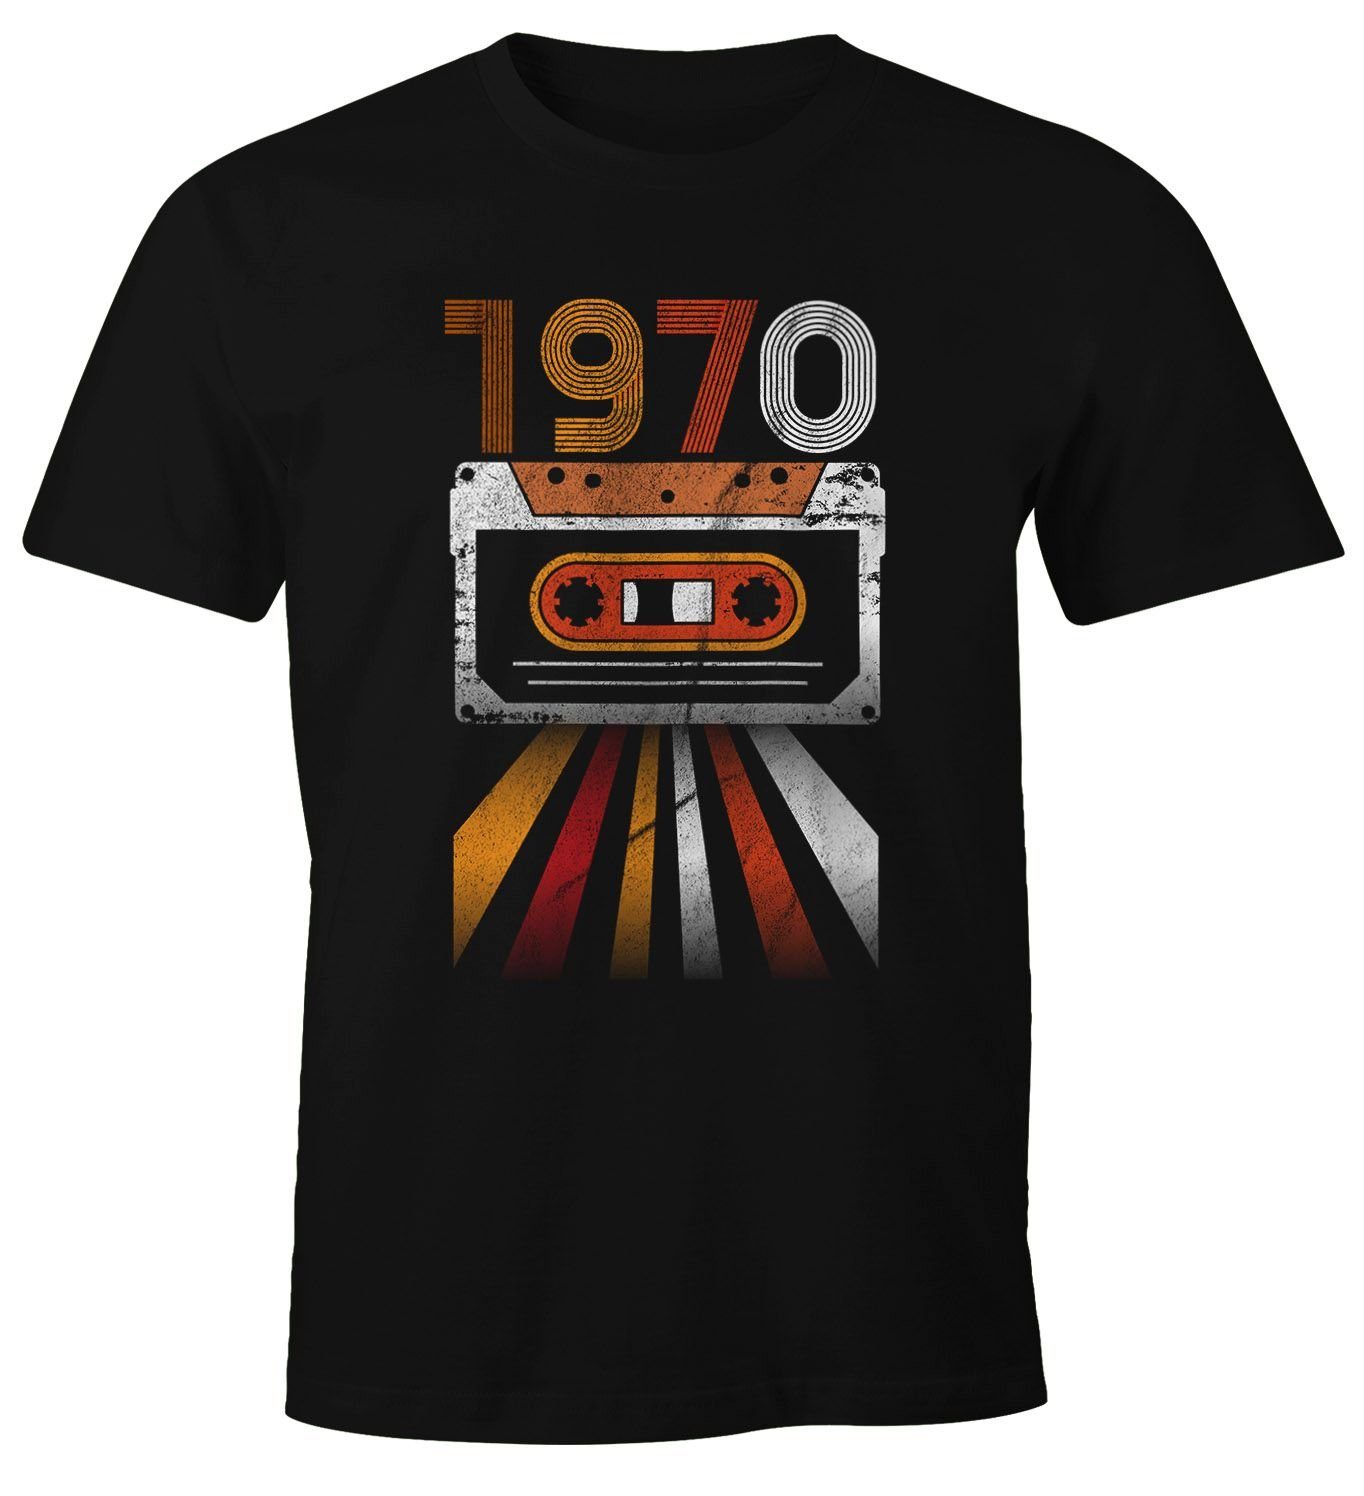 MoonWorks Print-Shirt Herren T-Shirt Geburtstag Retro 70er Jahre Vintage Siebziger Geschenk-Shirt Moonworks® mit Print 1970 schwarz